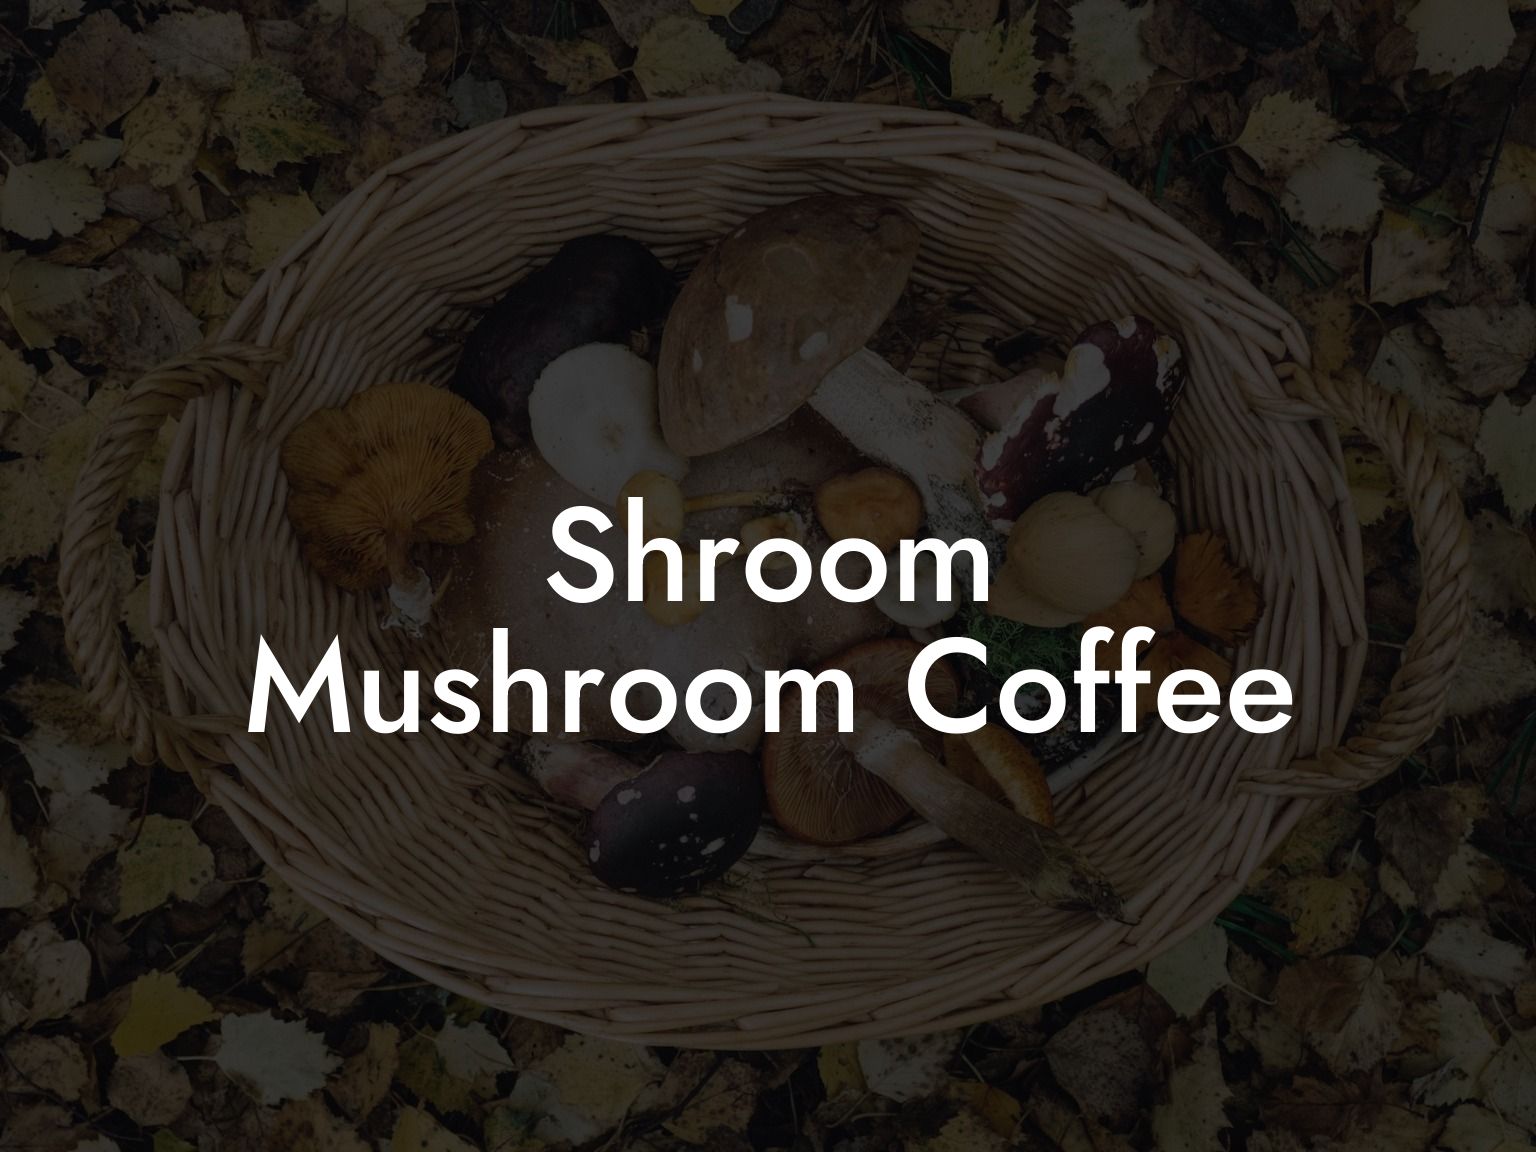 Shroom Mushroom Coffee